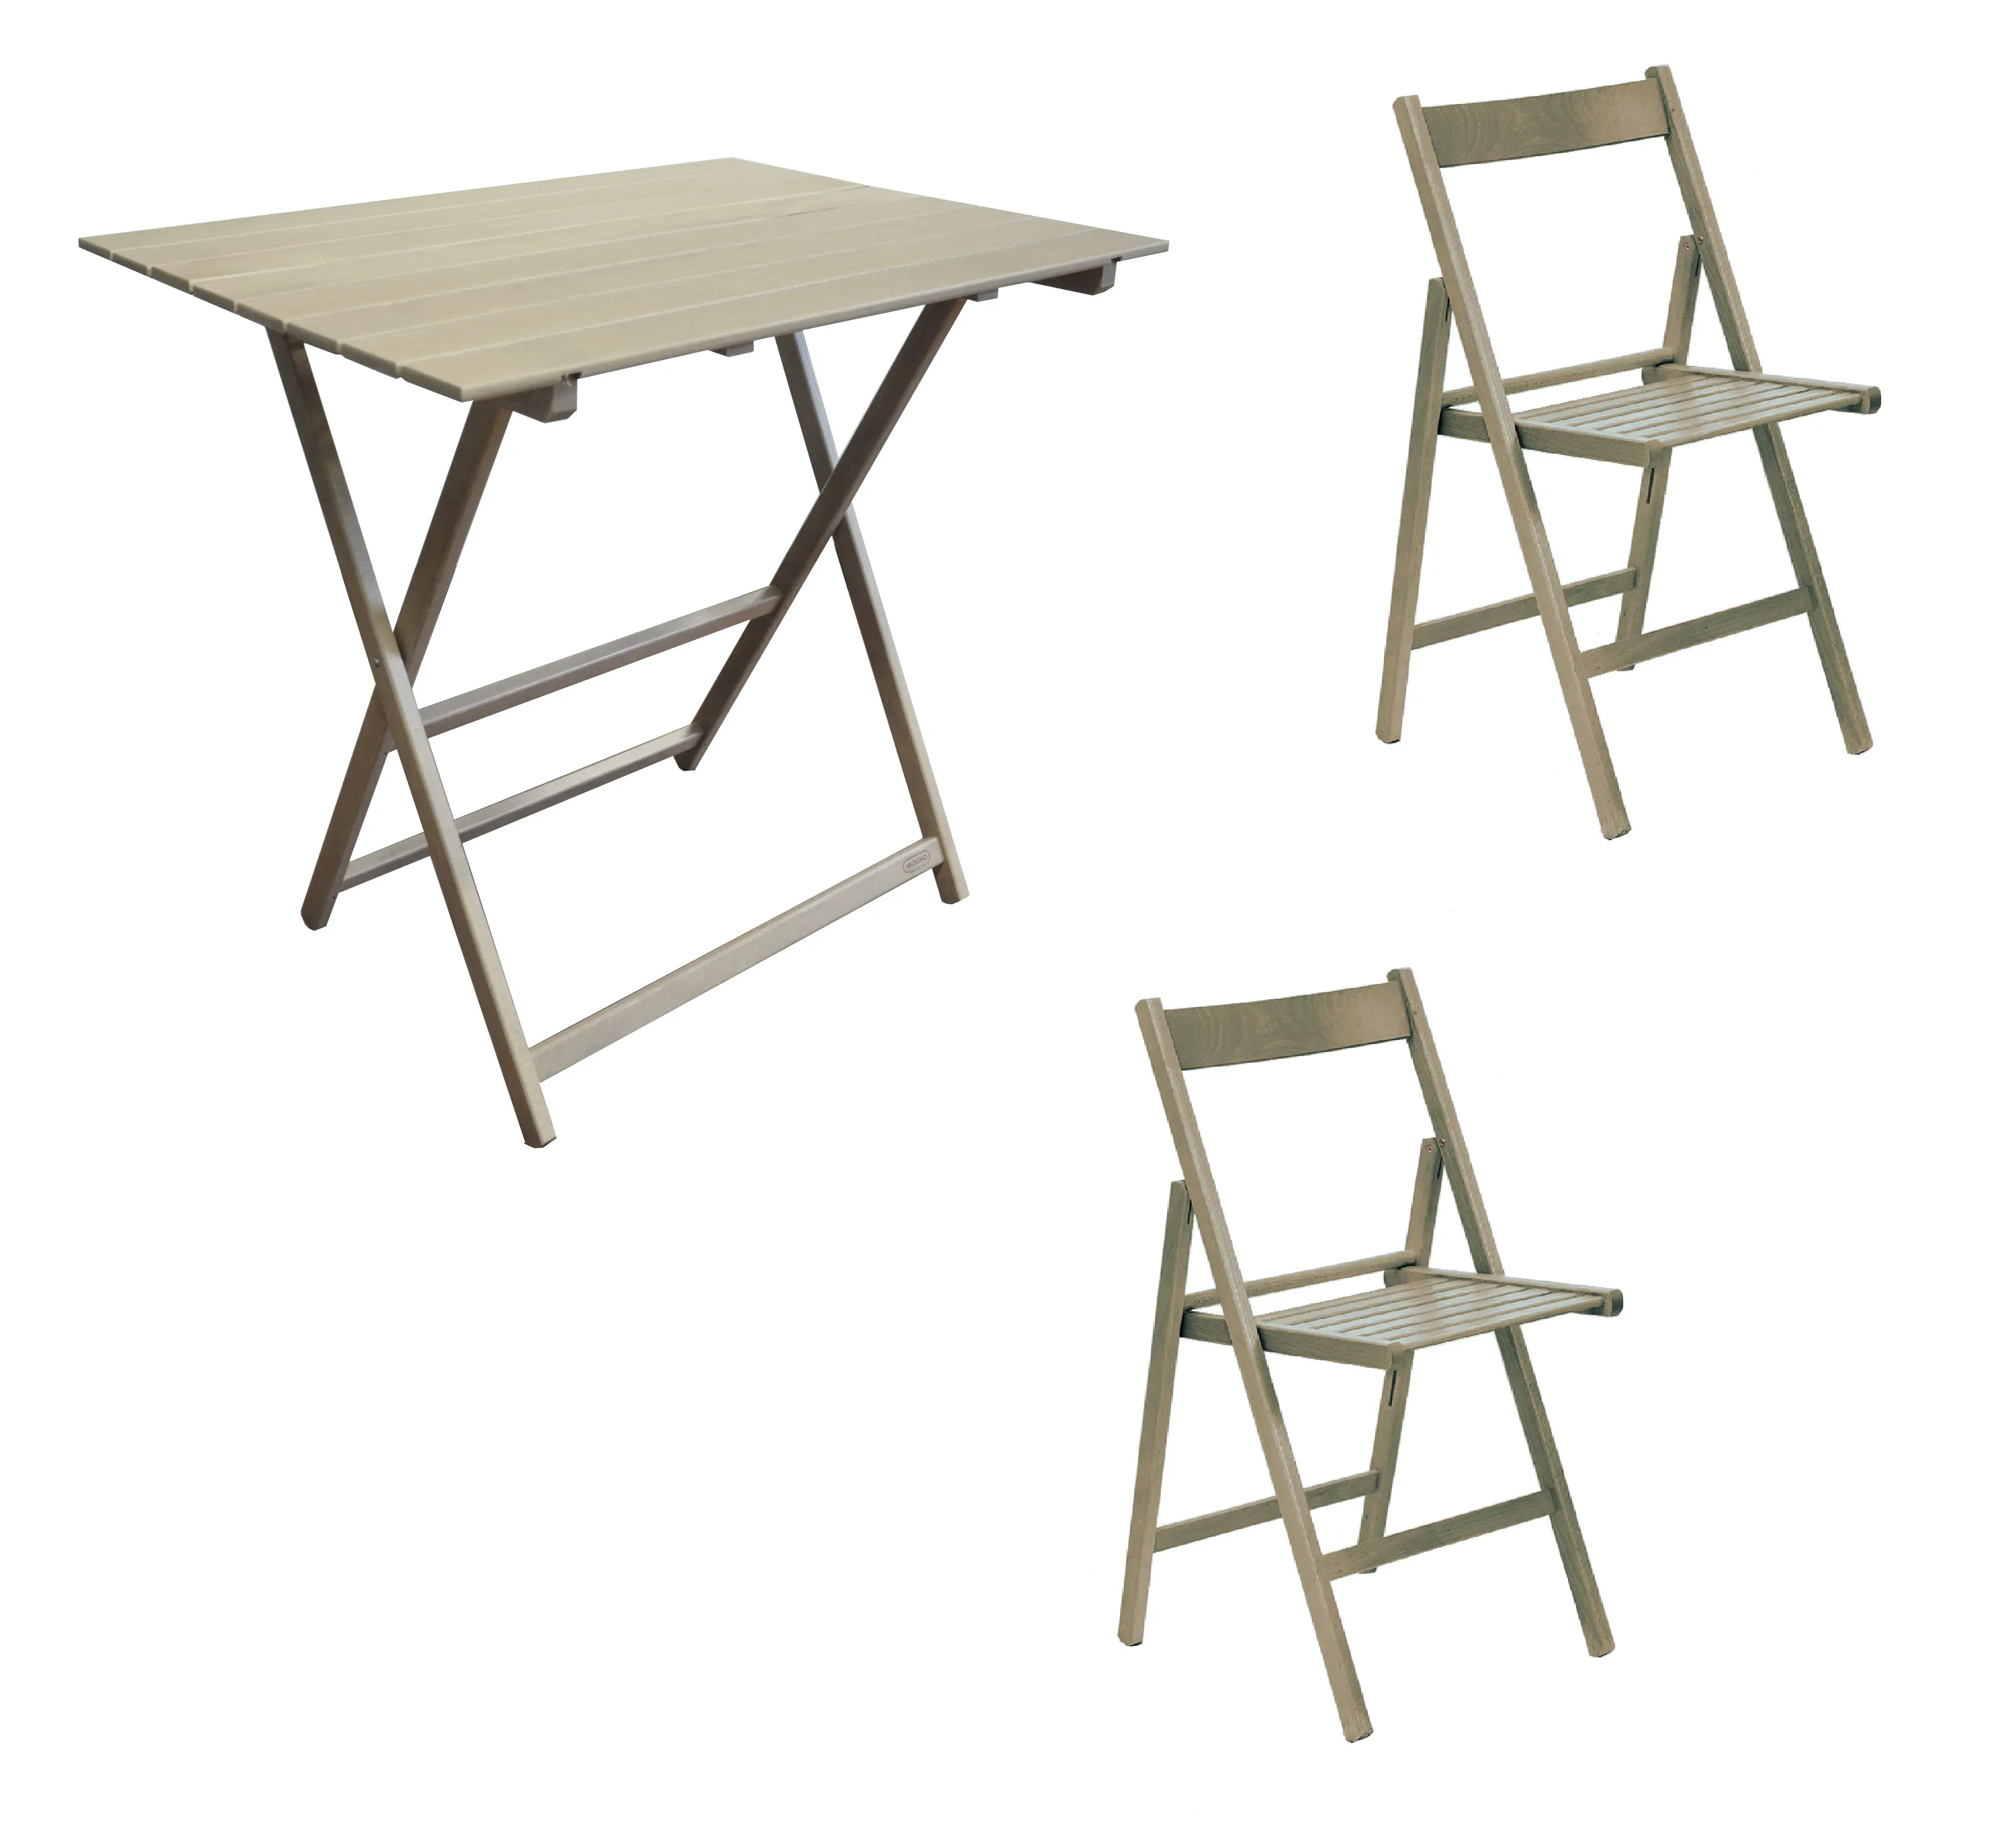 Juego de mesa plegable de alta calidad, 60x80 cm, con 2 sillas en madera de haya maciza, color gris, para interiores y exteriores, hecho en Italia